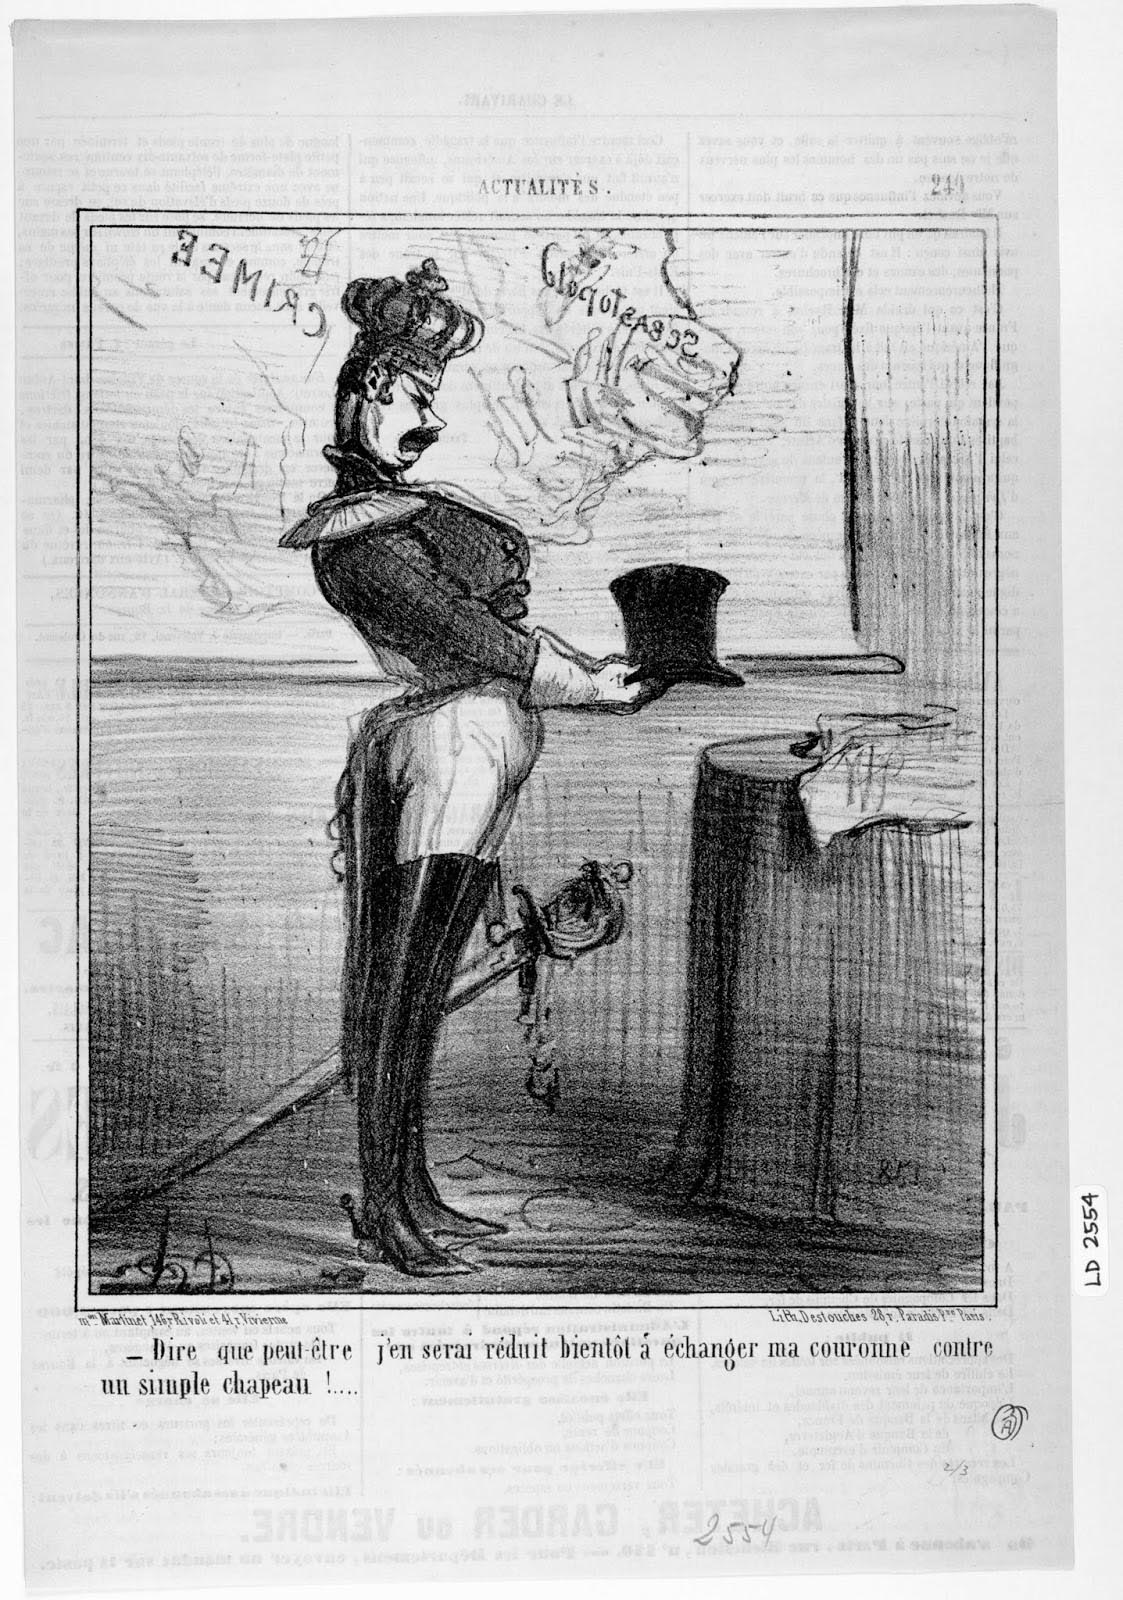 Honoré Daumier. Actualités, no. 249. Le Charivari. December 1, 1855. LD 2554